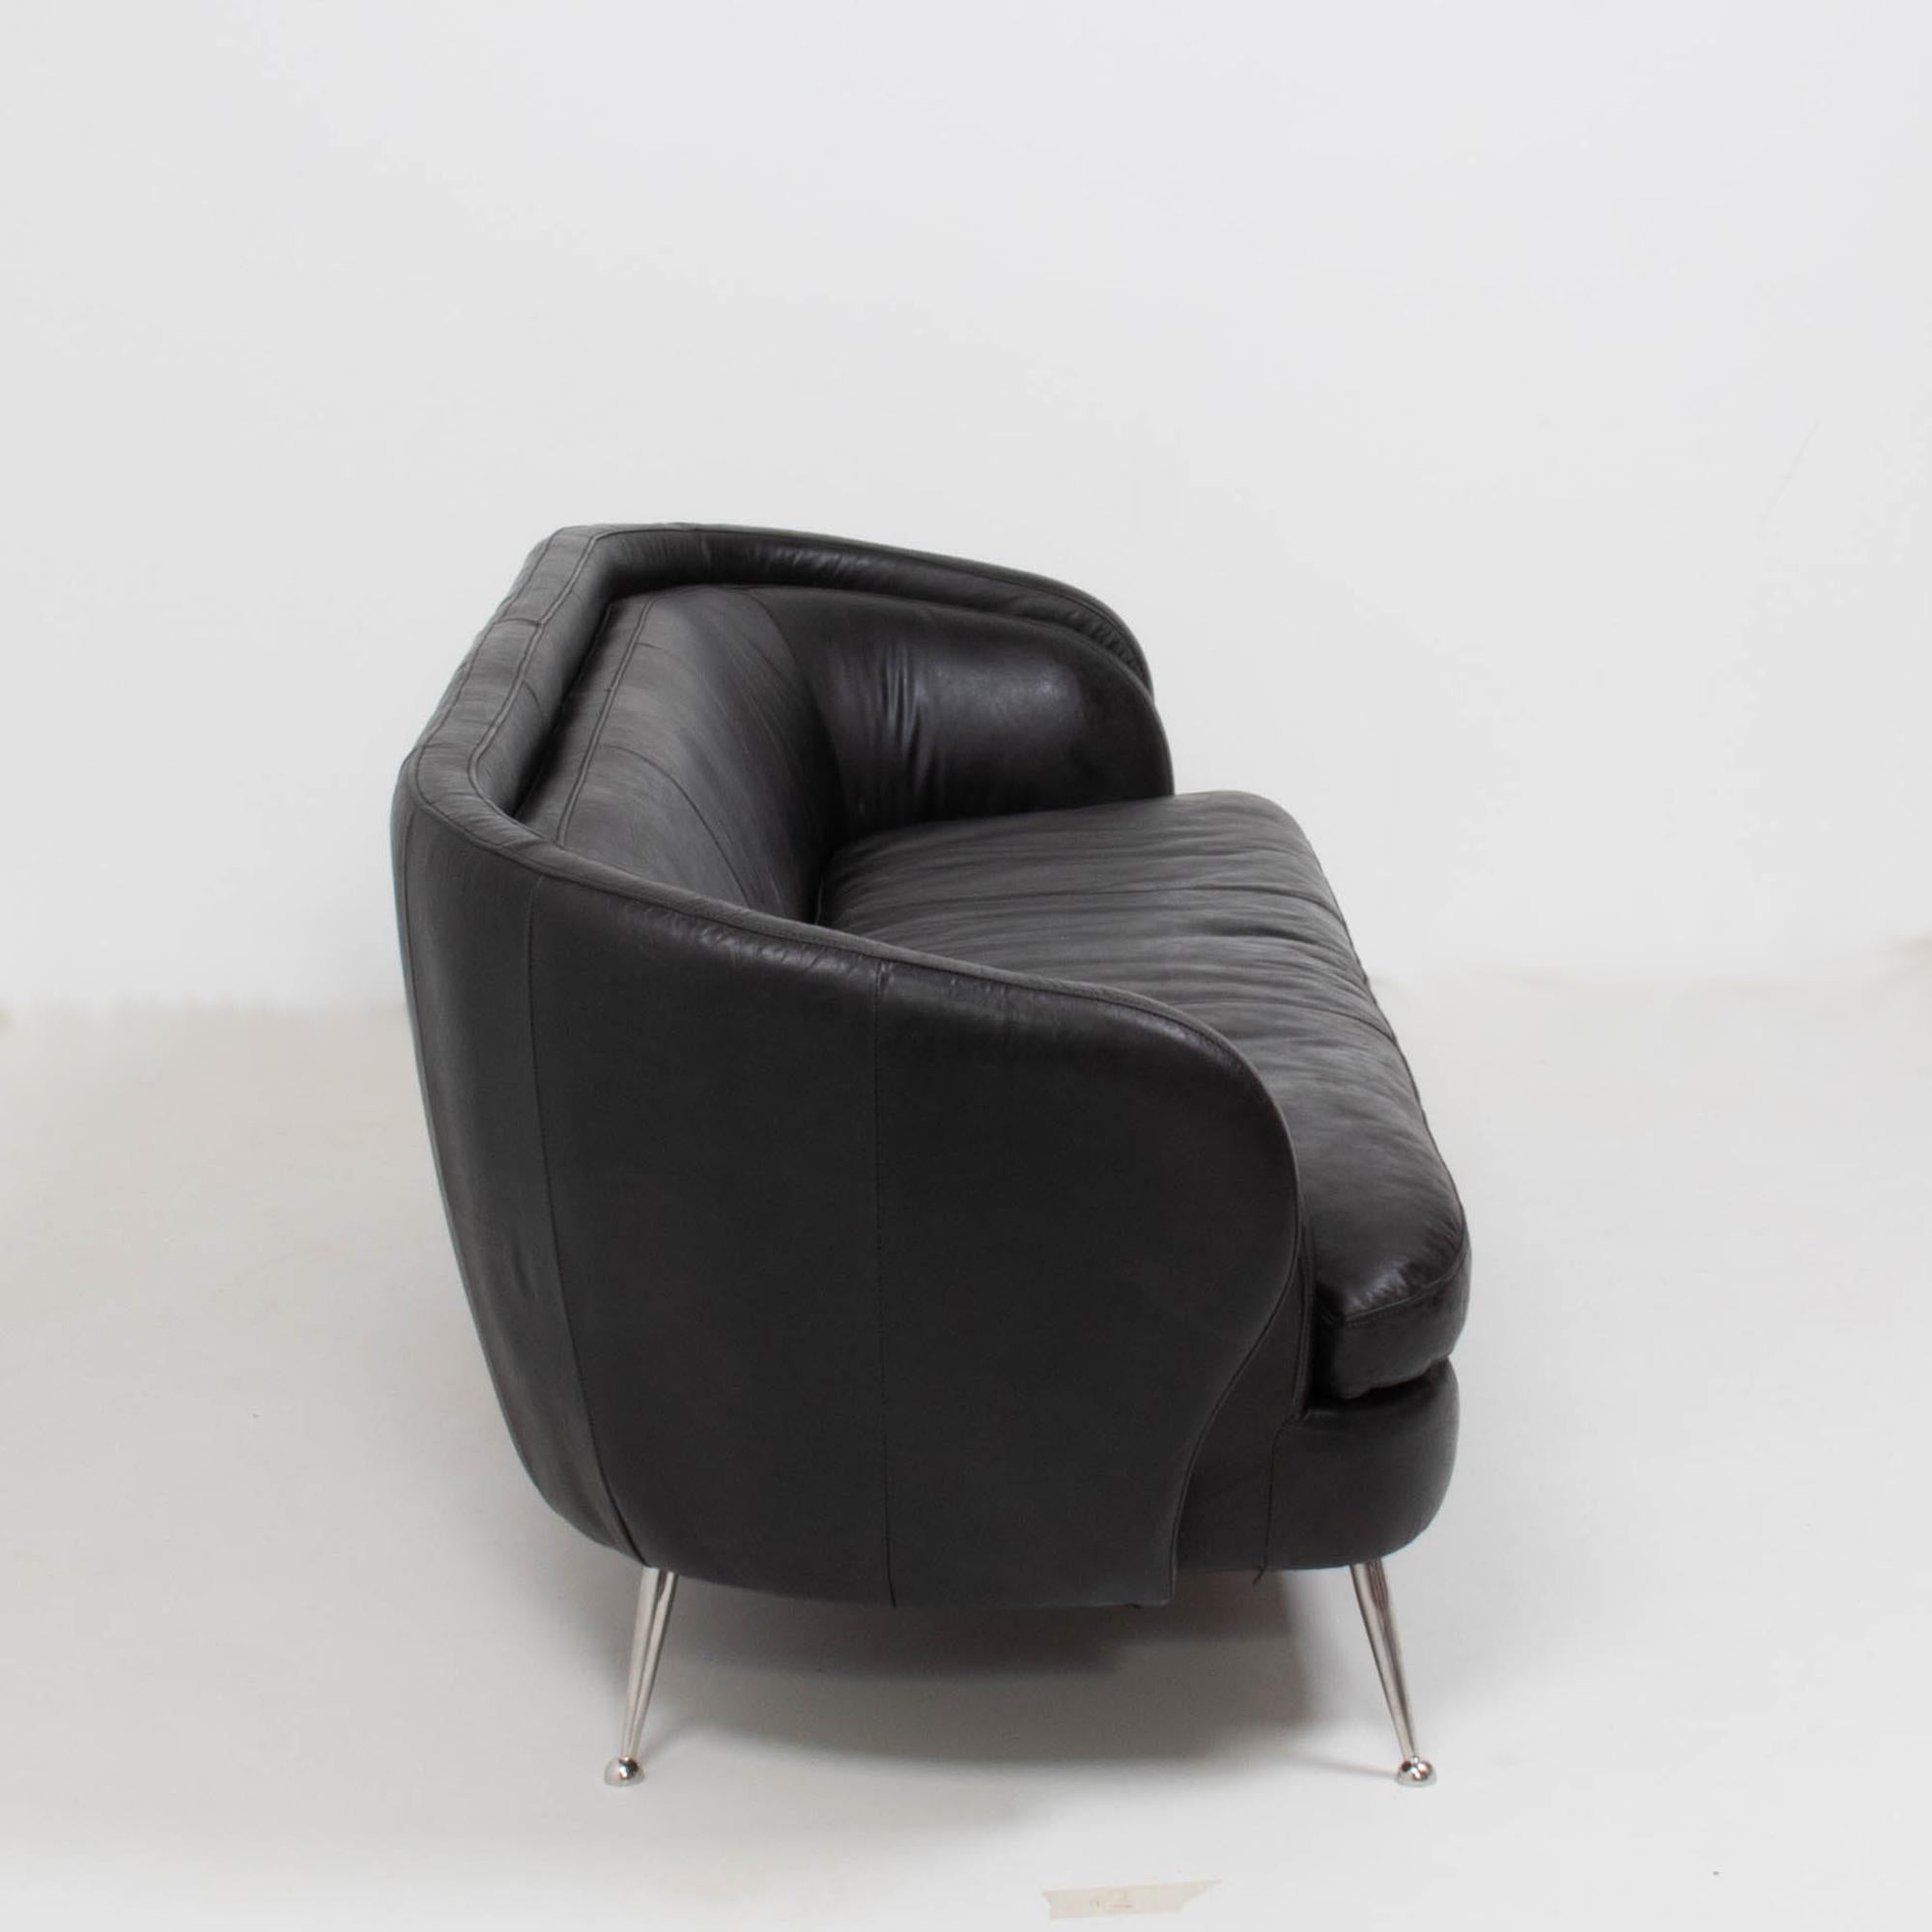 Italienisches geschwungenes dreisitziges Vintage-Sofa aus Leder, 1960er Jahre (Unbekannt)